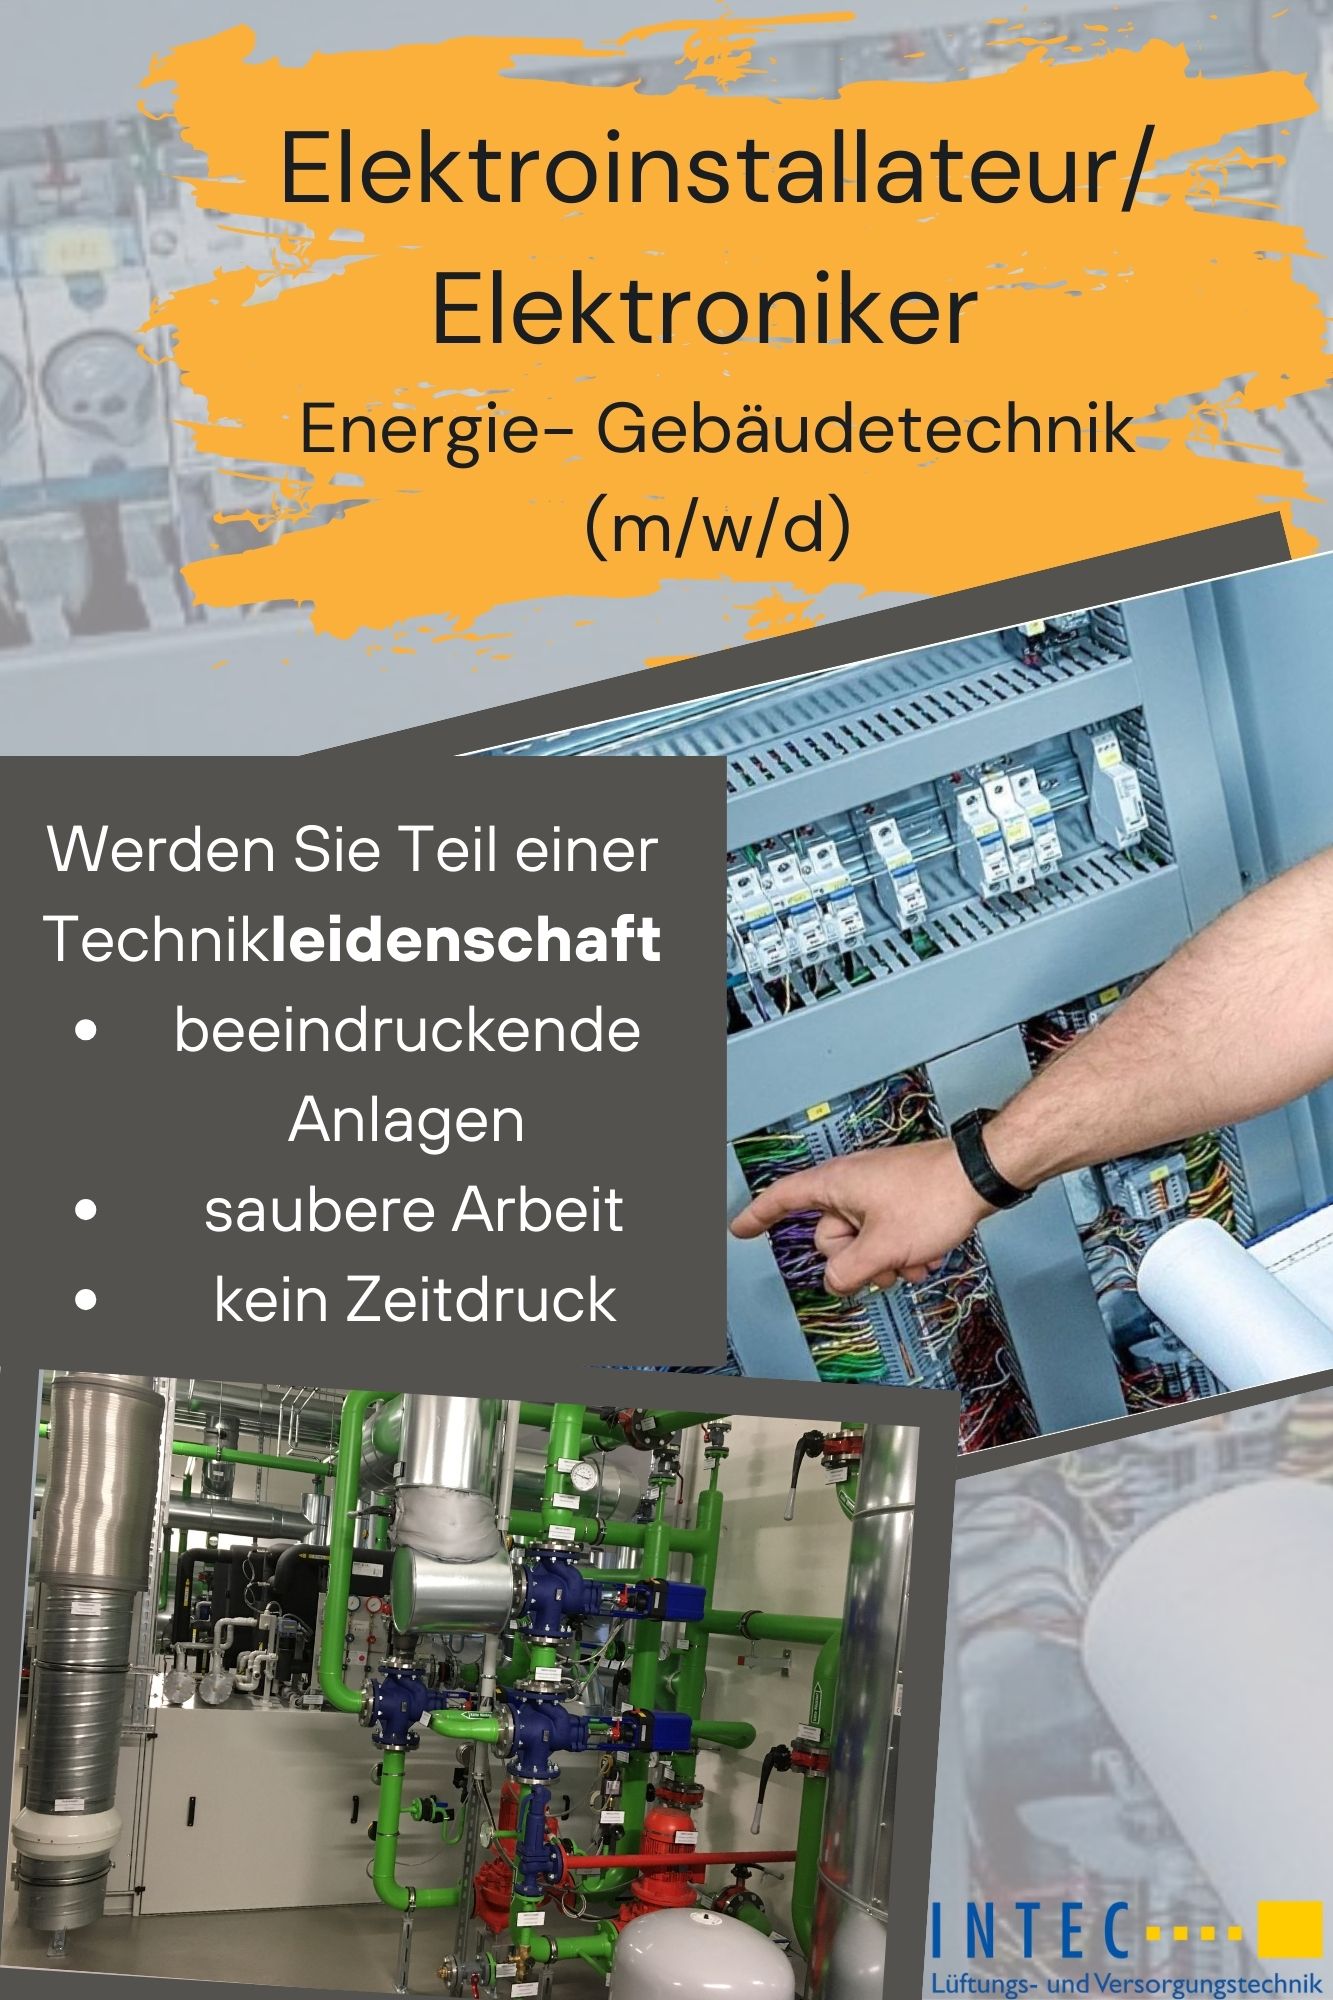 Elektroinstallateur/ Elektroniker Energie- und Gebäudetechnik (m/w/d) Wir bieten ab sofort einer/m Elektroinstallateur / Elektroniker für Energie- und Gebäudetechnik (m/w/d) am Standort Hamburg eine unbefristete Festanstellung in Vollzeit an. Als Elektroniker (m/w/d) können Sie von uns eine gute Vereinbarkeit von Familie und Beruf erwarten – geregelte Arbeitszeiten, keine Überstunden und Arbeiten ohne Akkord- und Zeitdruck. Wir von der Intec Versorgungstechnik sorgen jeden Tag für frische Luft. Wir zeichnen uns durch außergewöhnliche, millionenschwere Großbauprojekte (Krankenhäuser, Forschungseinrichtungen, öffentliche Bauten) aus. Jahrzehnte an Erfahrungen mit sensibler Haustechnik bilden die Grundlage unseres Erfolgs. Als Elektroinstallateur/ Elektroniker (m/w/d) arbeiten Sie in unserer Serviceabteilung am Standort Hamburg mit. Was wir bieten: • geregelte Arbeitszeiten Mo bis Fr – KEINE Überstunden, KEIN Zeitdruck • direkt von zu Hause aus starten • entspannte, saubere Arbeitsatmosphäre keine Akkordarbeit • hochwertiges Qualitätswerkzeug (Bosch, Testo, Wera, Duspol, Gossen Metrawatt oder nach eigenen Wünschen) • Firmenfahrzeuge von VW, dass Sie mit nach Hause nehmen können • Sommerurlaub bis zu 3 Wochen, zwischen Weihnachten und Neujahr Betriebsferien • Weihnachts-, Urlaubsgeld, Prämien nach Leistungsbereitschaft • Betriebliche Altersvorsorge Was Sie erwartet: • Installieren und Verkabeln im Bereich Gebäudetechnik • Begleiten der Inbetriebnahmen • Störungssuche/ Fehleranalyse, Beheben der Störungen • Durchführungen von Instandsetzungen und Wartungsarbeiten   Was wir erwarten: • abgeschlossene Ausbildung im Bereich Elektrotechnik, als Elektroniker Energie-/Gebäudetechnik, Elektroinstallateur (m/w/d) oder vergleichbarer Abschluss • Erfahrungen in der Automatisierungstechnik und/oder MSR-Technik wünschenswert • Kenntnisse aus der Gebäudeautomation vorteilhaft • Reisebereitschaft (insg. 2 Wochen / Jahr) • Führerscheinklasse B Wir leben von Luft und Liebe zur Technik Die Intec Versorgungstechnik ist ein etabliertes Unternehmen in Neubrandenburg und Hamburg, das sich auf hochwertige Lüftungstechnik/ Raumlufttechnik spezialisiert hat. Als ausführendes Unternehmen mit eigenem Planungsbereich haben wir uns seit unserer Gründung 1990 einen exzellenten Ruf in der Branche erarbeitet. Dieser basiert auf Qualität, Zuverlässigkeit und Innovation. Werden Sie Teil unseres Teams! 